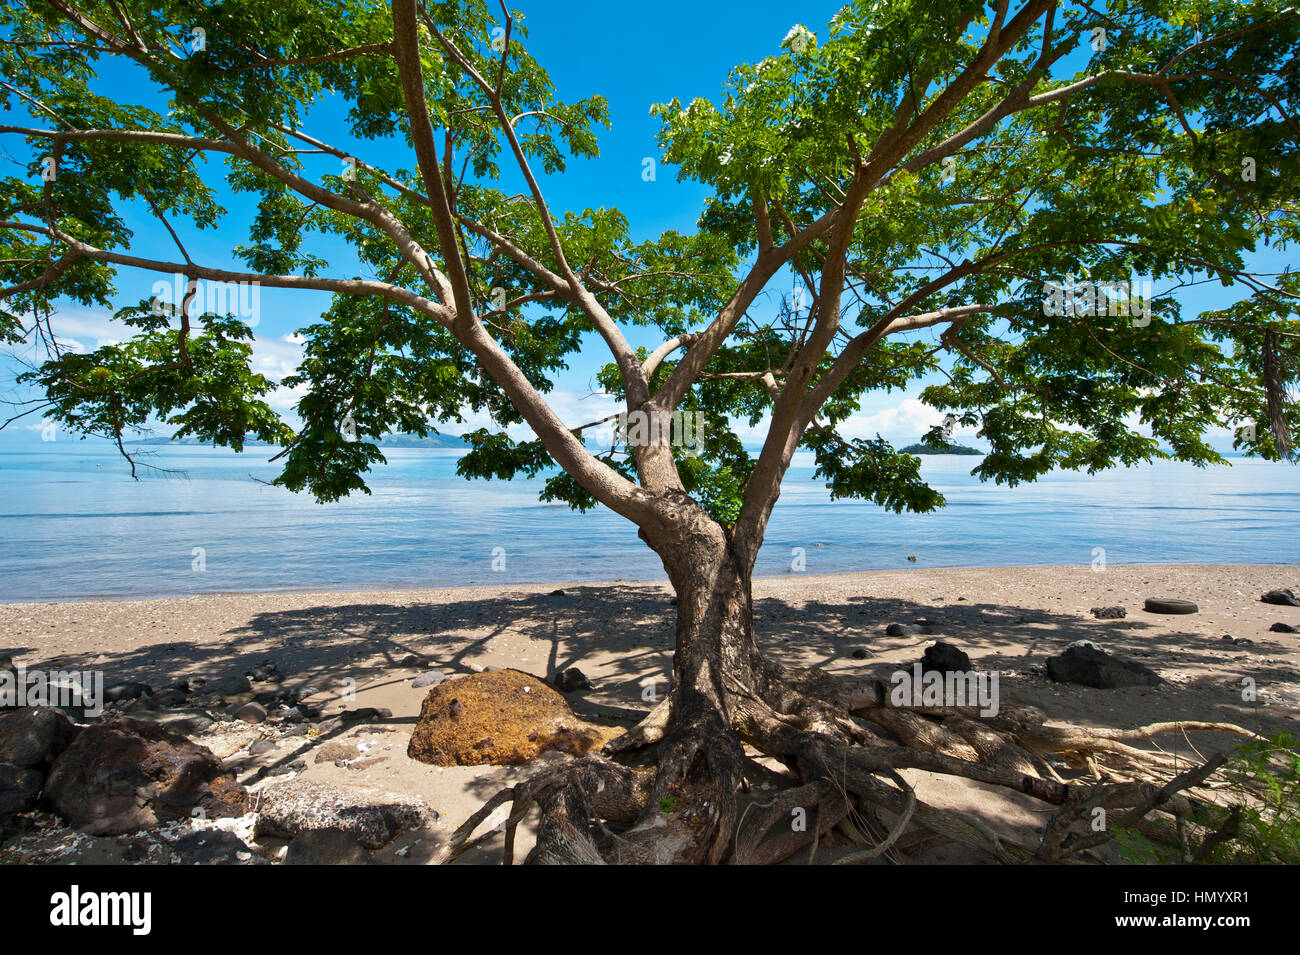 La tettoia tentacolare di un albero su una spiaggia offre un posto all'ombra per sedersi. Foto Stock